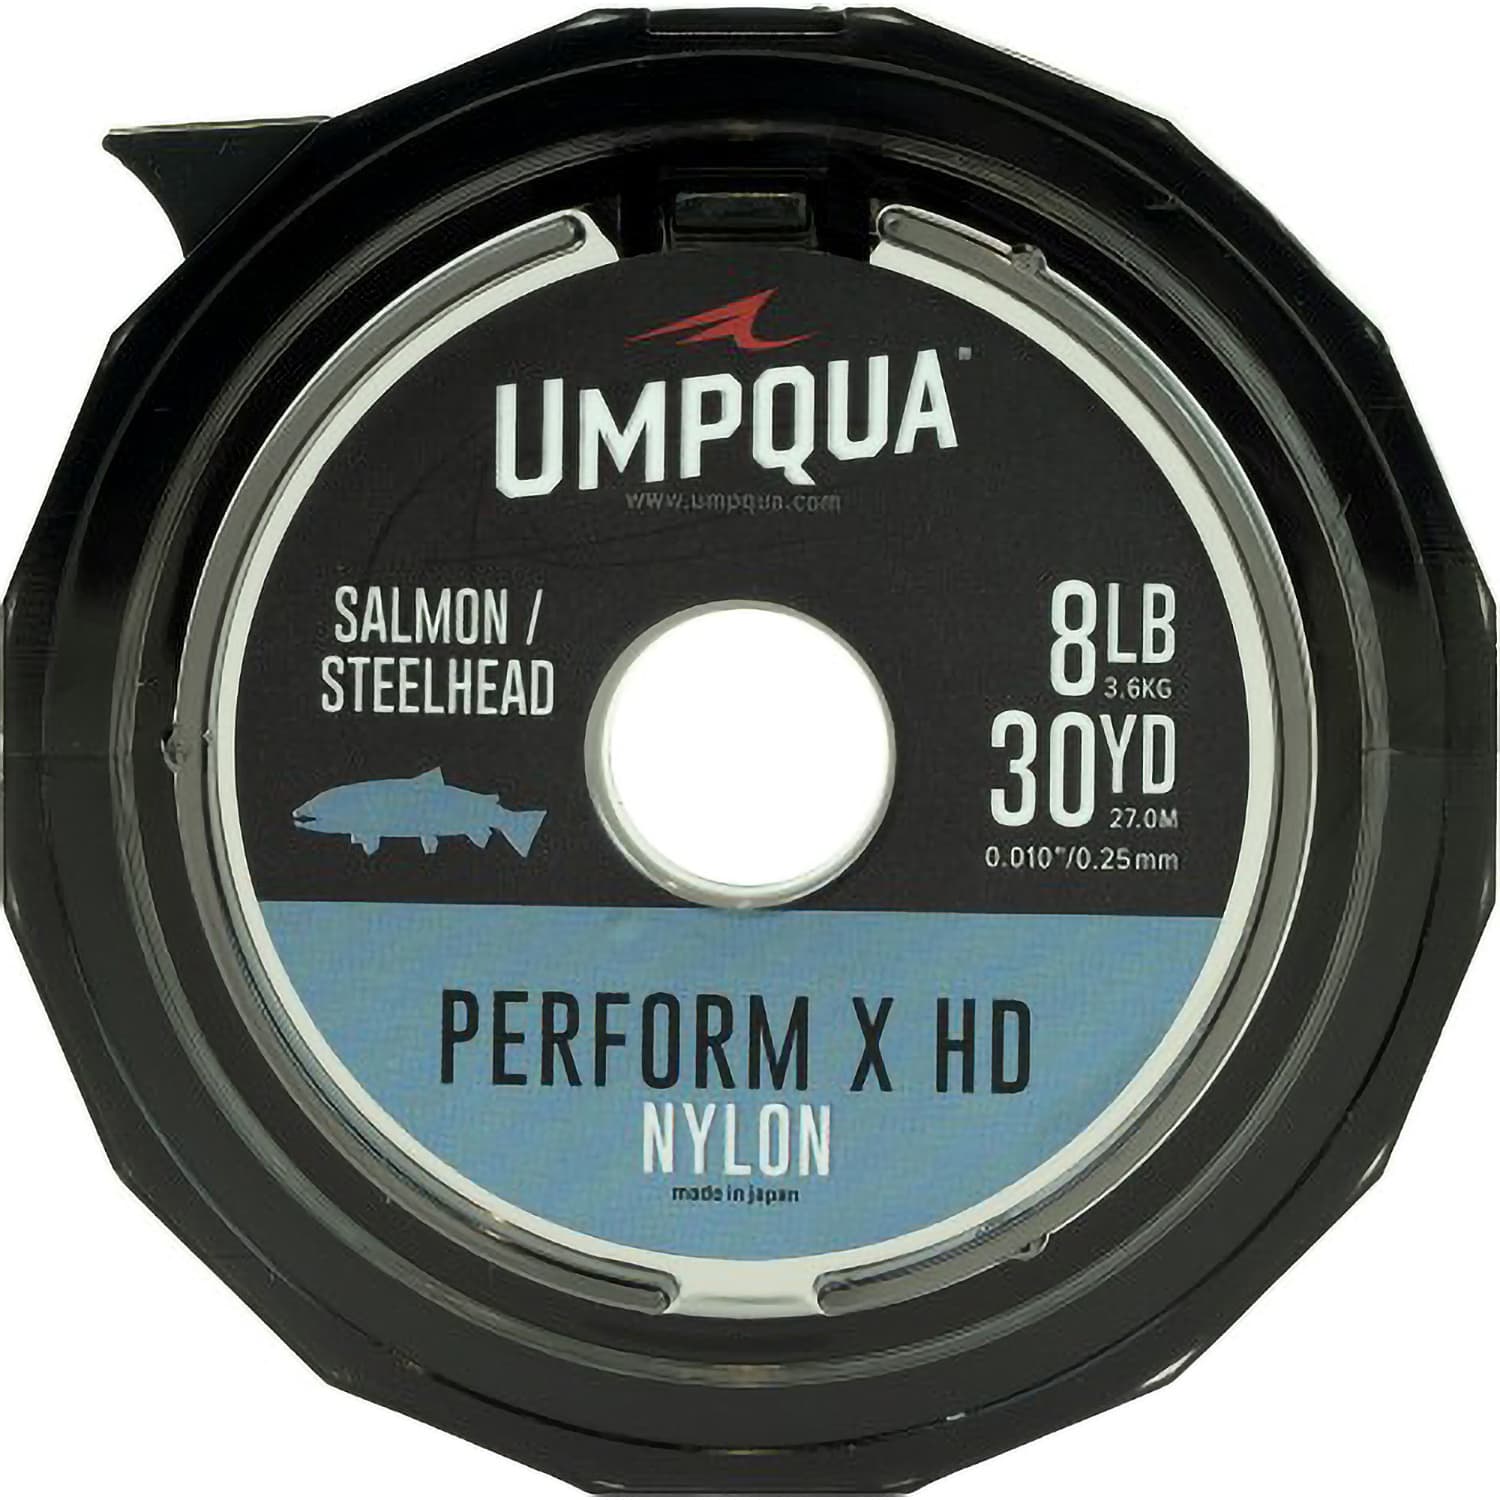 Umpqua® Perform X HD Salmon/Steelhead Nylon Tippet